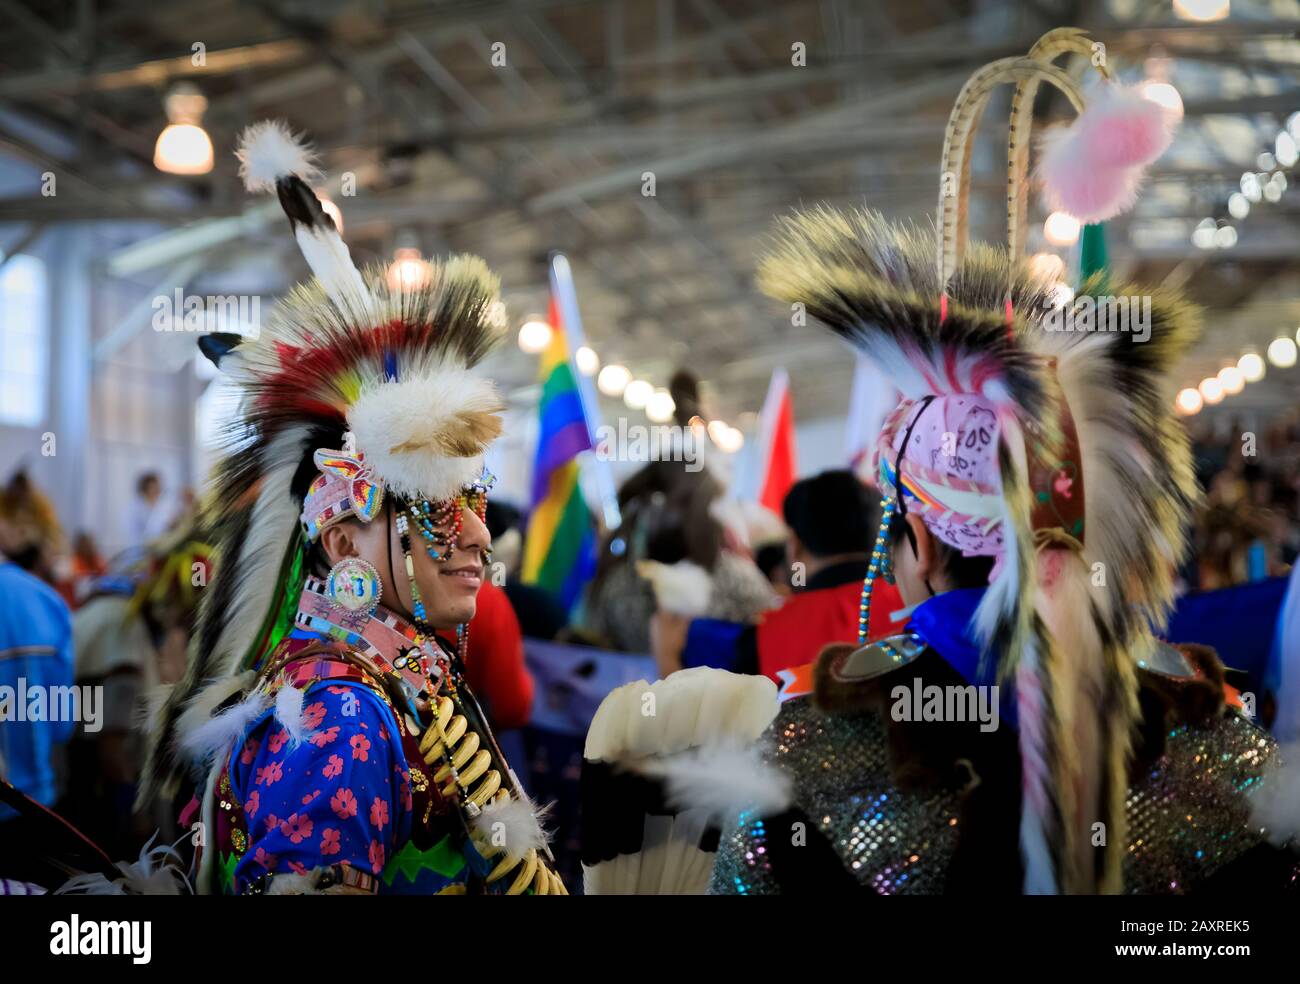 San Francisco, Stati Uniti d'America - 08 febbraio 2020: Indiani nativi americani che indossano intricati scarafaggi di porcupine e abiti tradizionali che danzano a una velocità incredibile Foto Stock